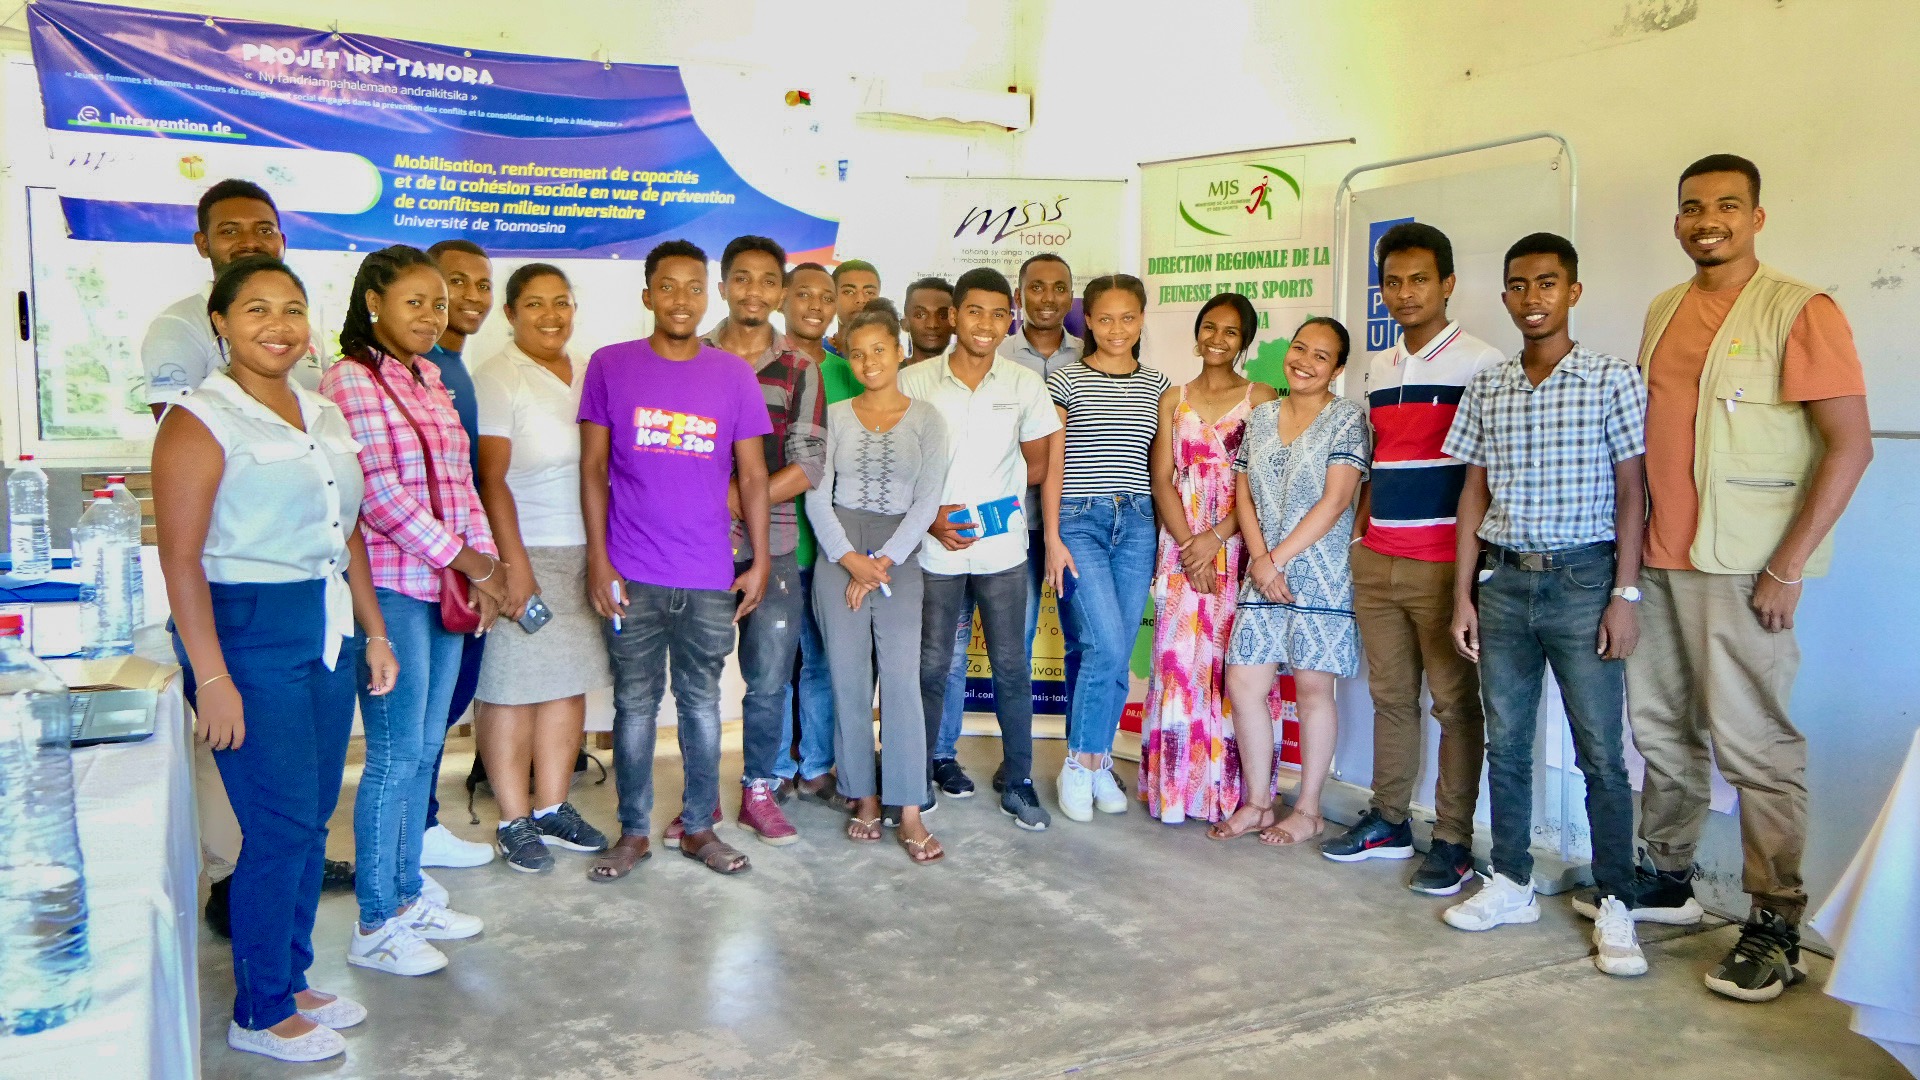 Les jeunes universitaires de Tamatave oeuvrant pour la consolidation de la paix